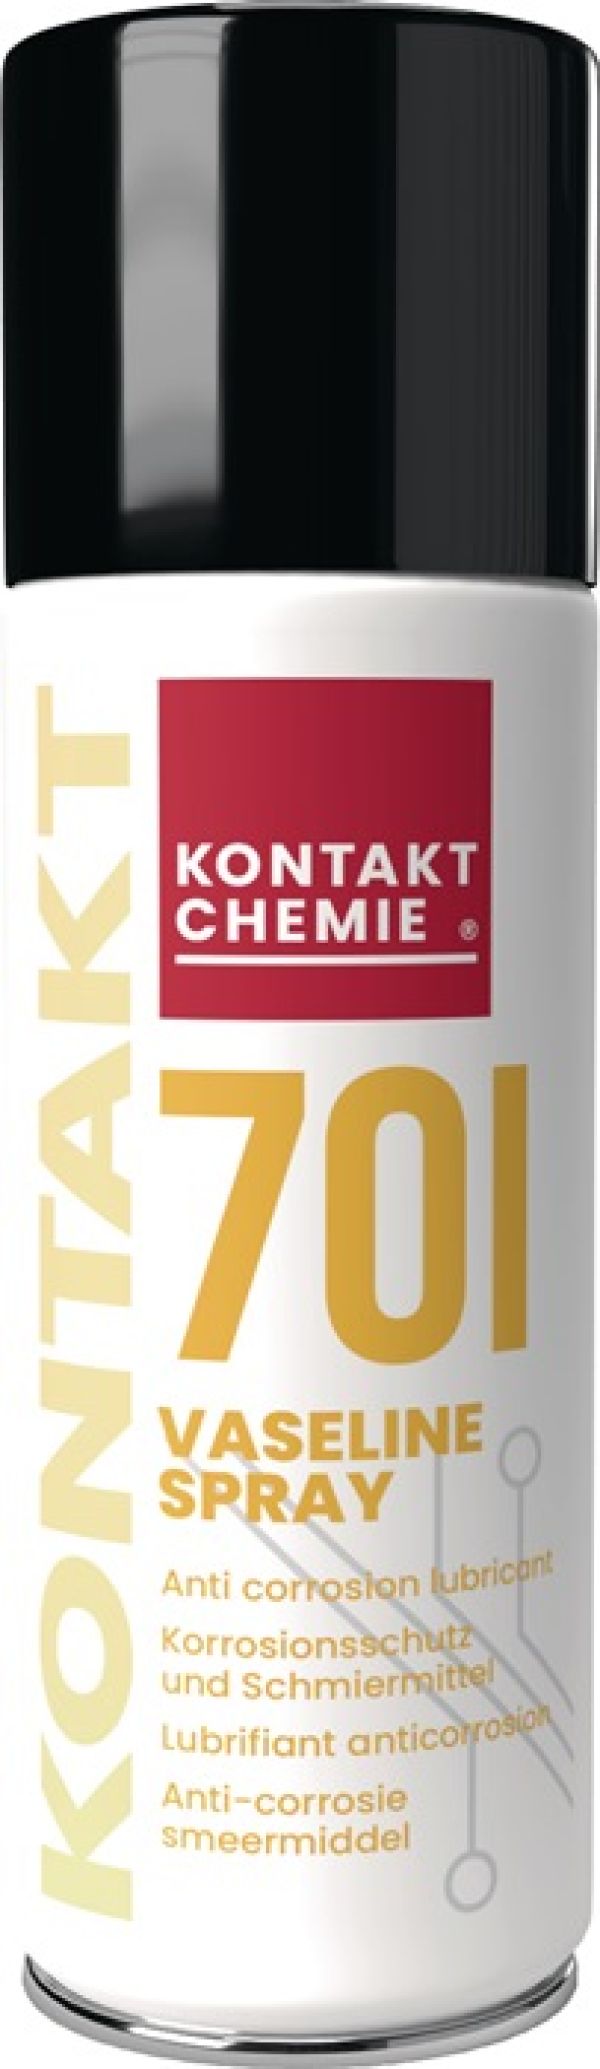 Vaselinespray KONTAKT 701 200 ml cremig-weiß Spraydose KONTAKT CHEMIE